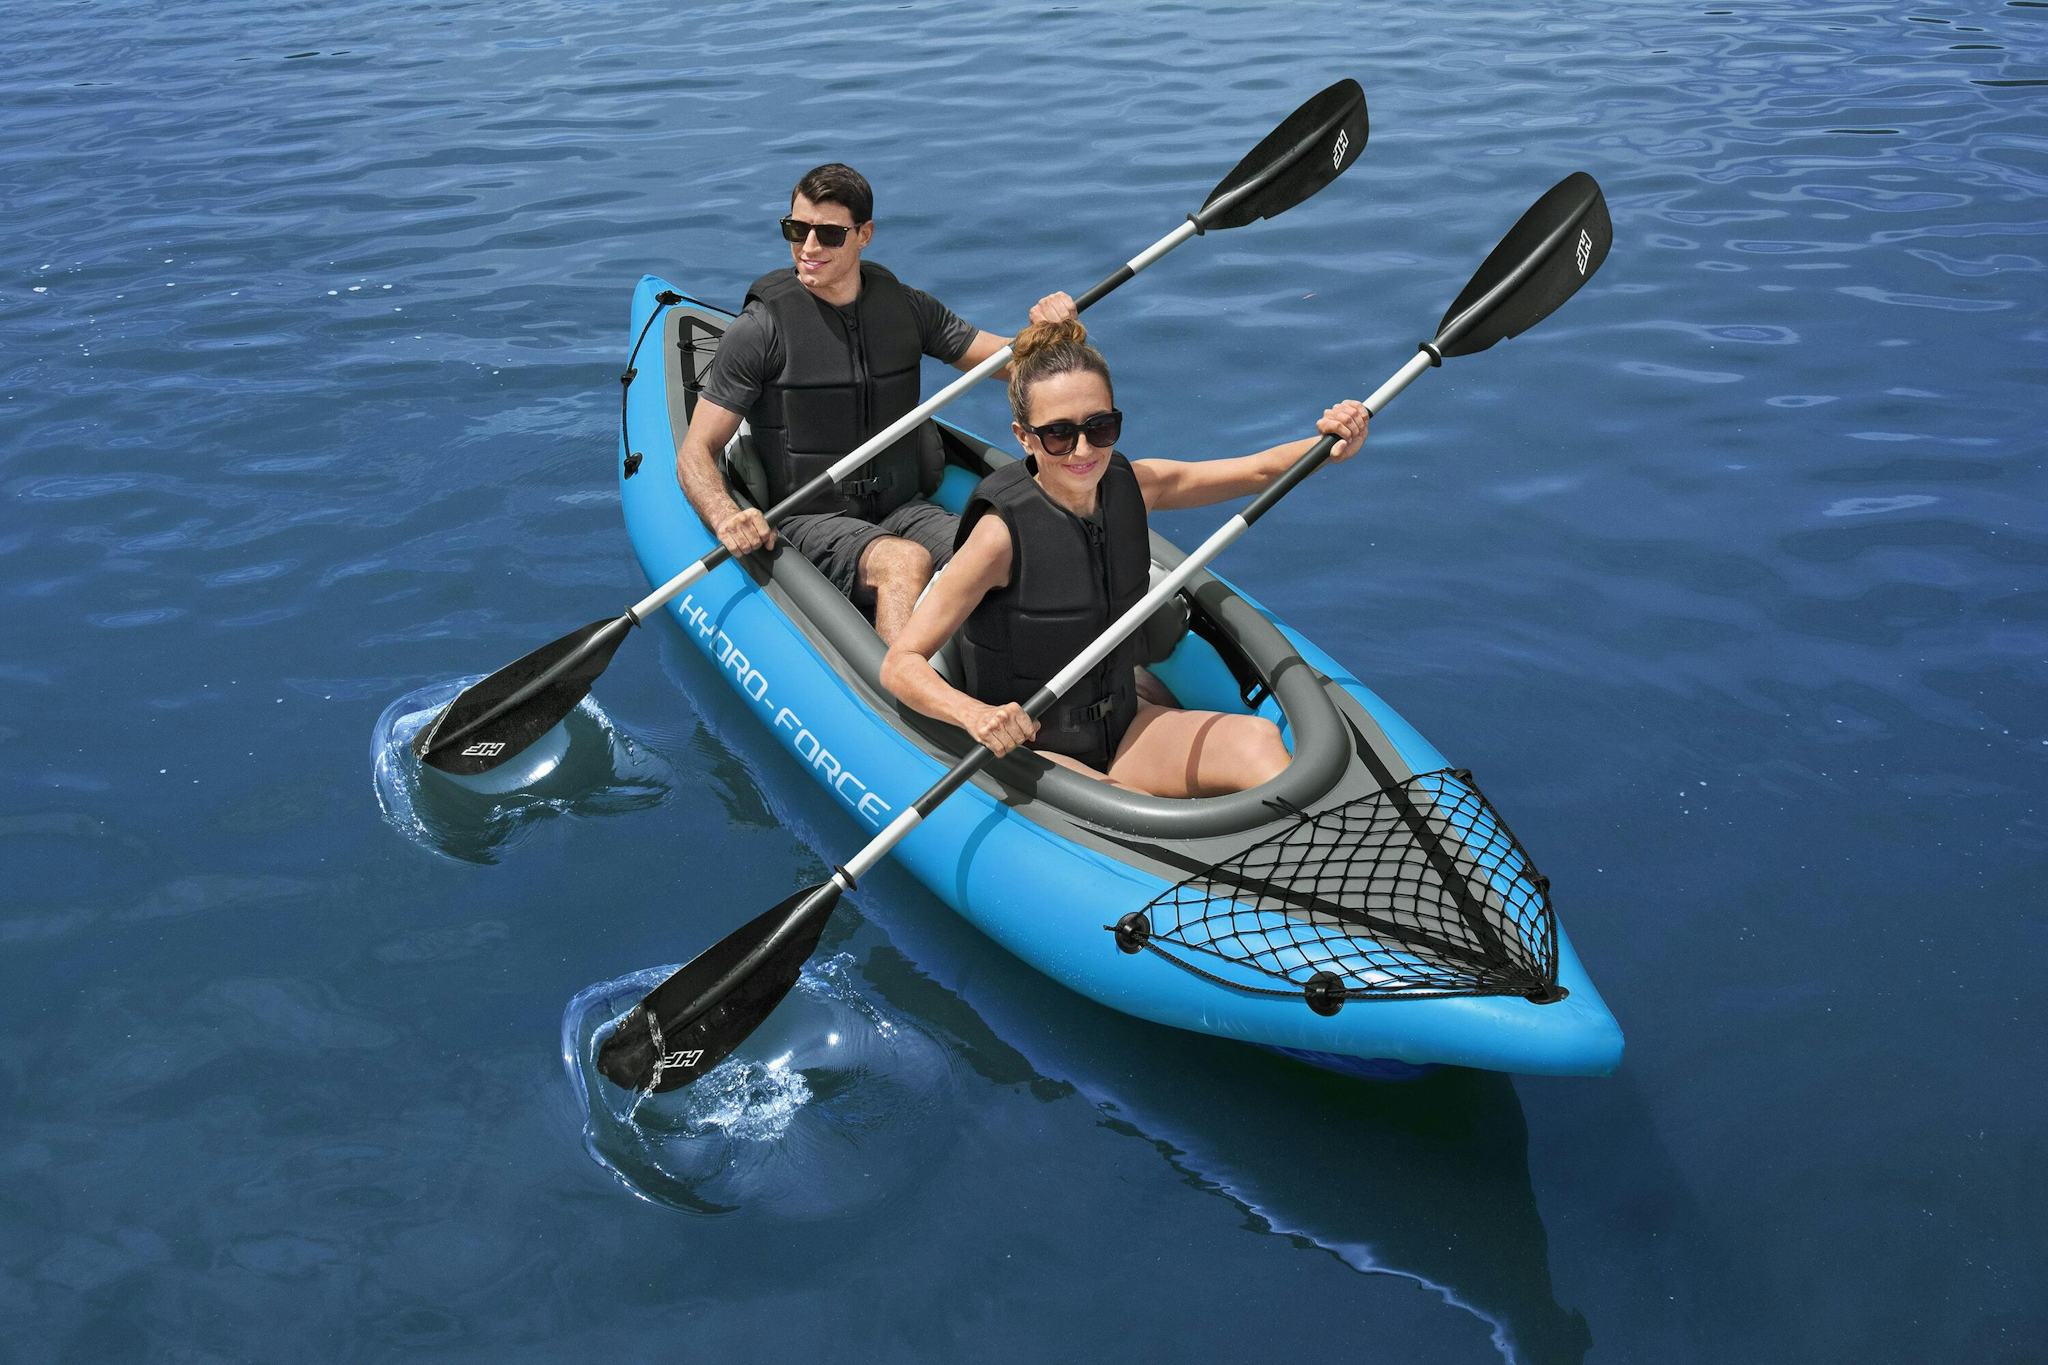 Sports d'eau Kayak gonflable Cove Champion X2 Hydro-Force™ 331 x 88cm, 2 places, 180 kg max, 2 pagaies, 2 ailerons amovibles et une pompe Bestway 3